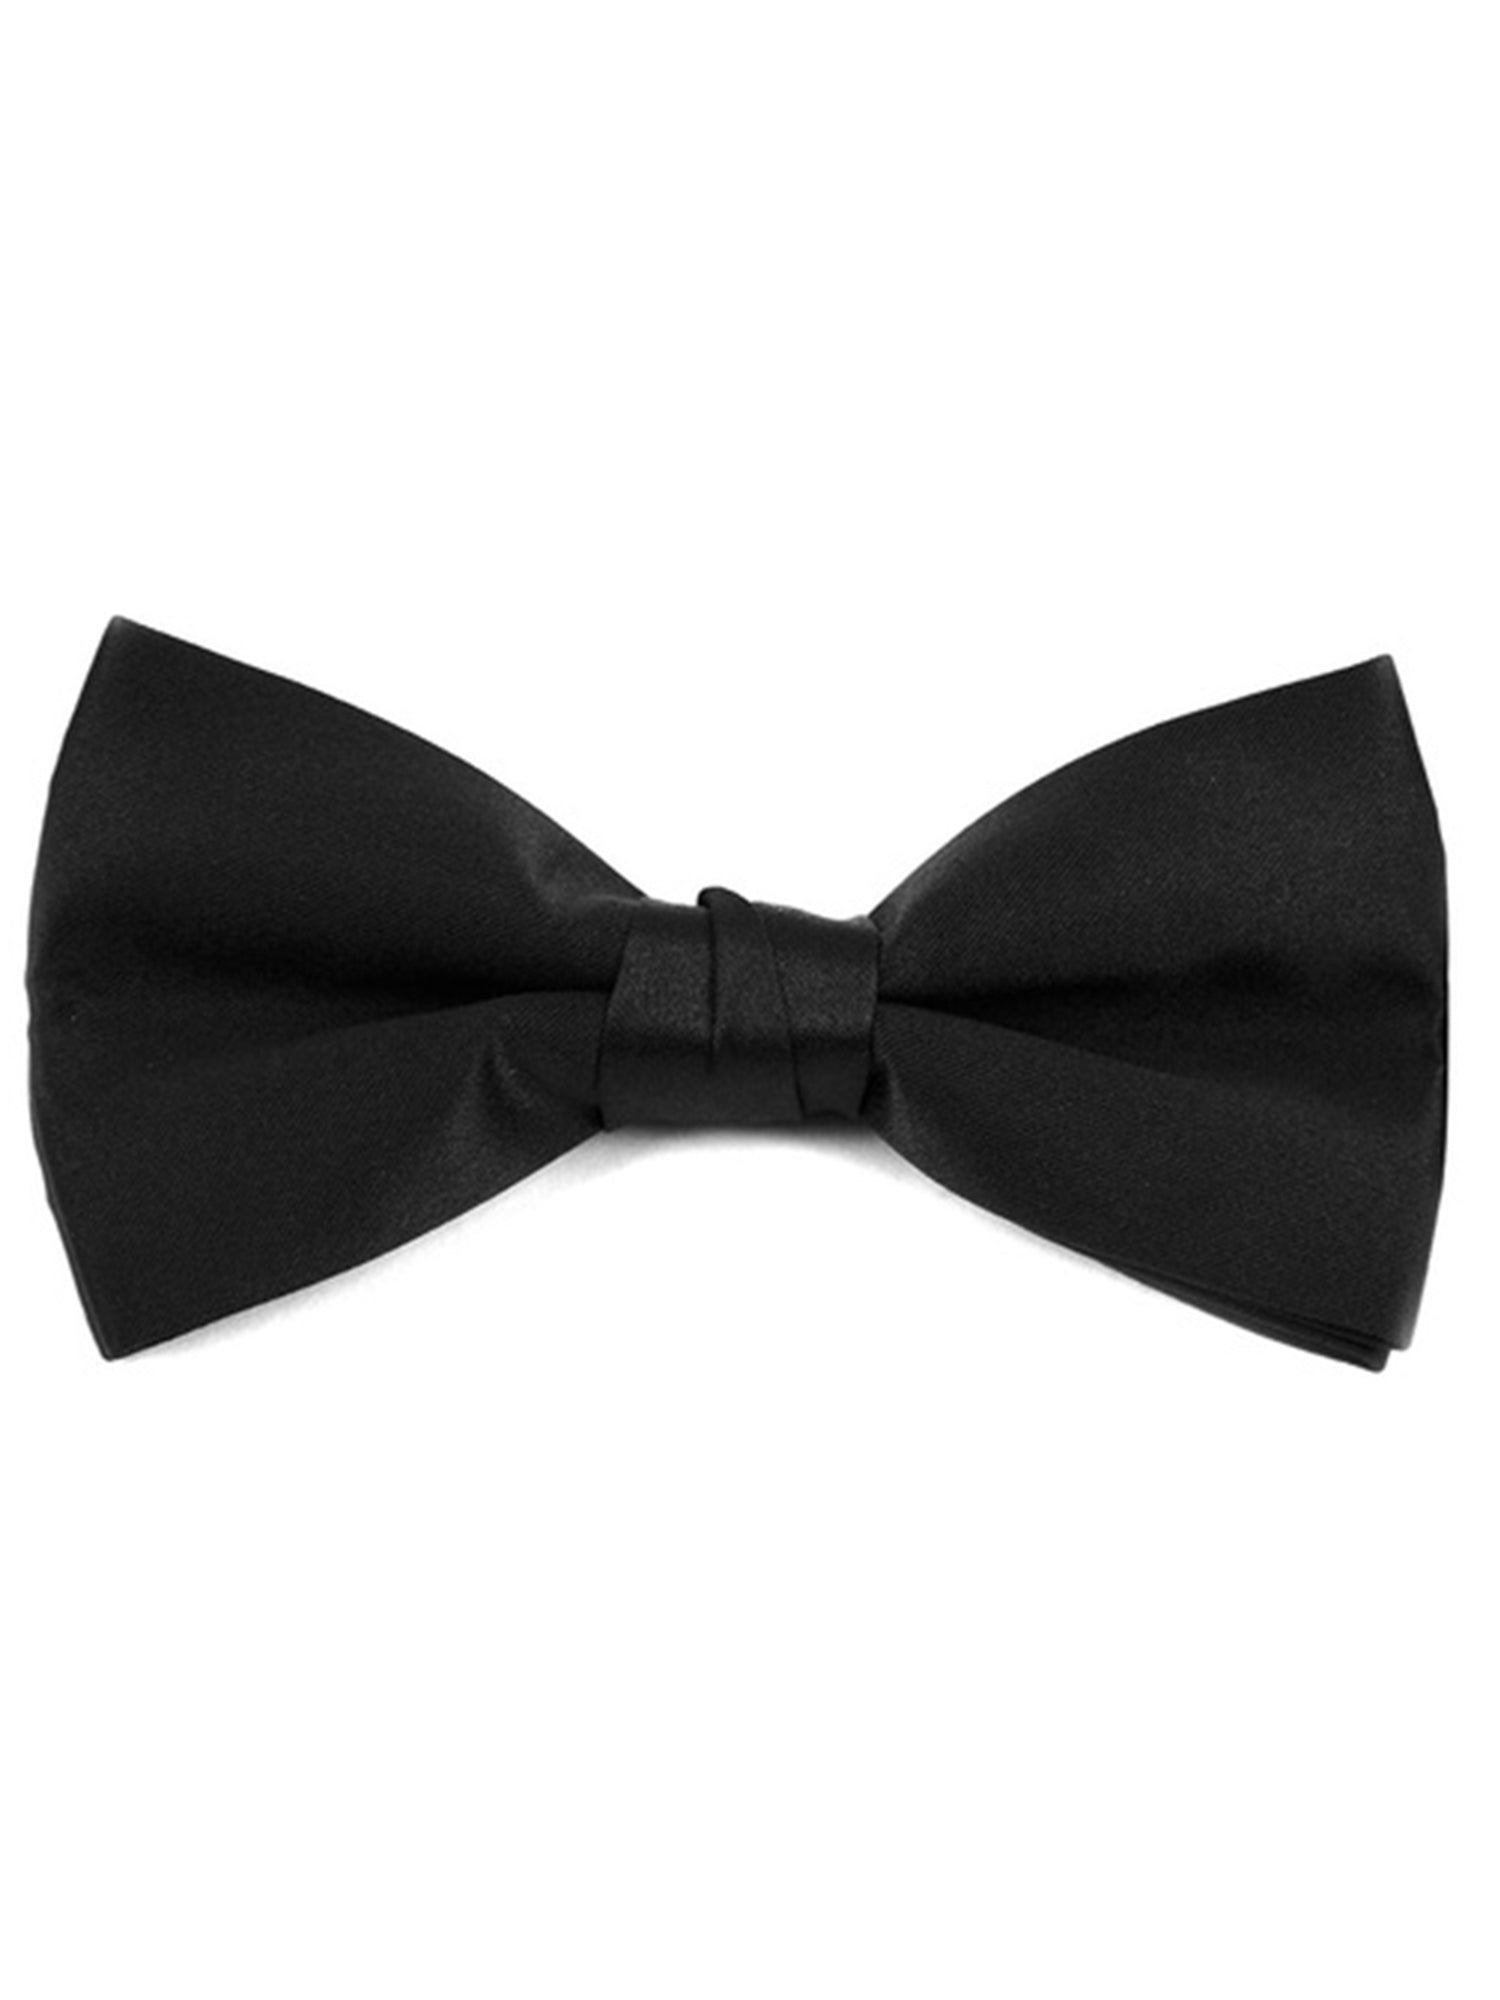 Men's Black Pre-tied Clip On Bow Tie - Formal Tuxedo Solid Color Men's Solid Color Bow Tie Alexander Logan Black One Size 